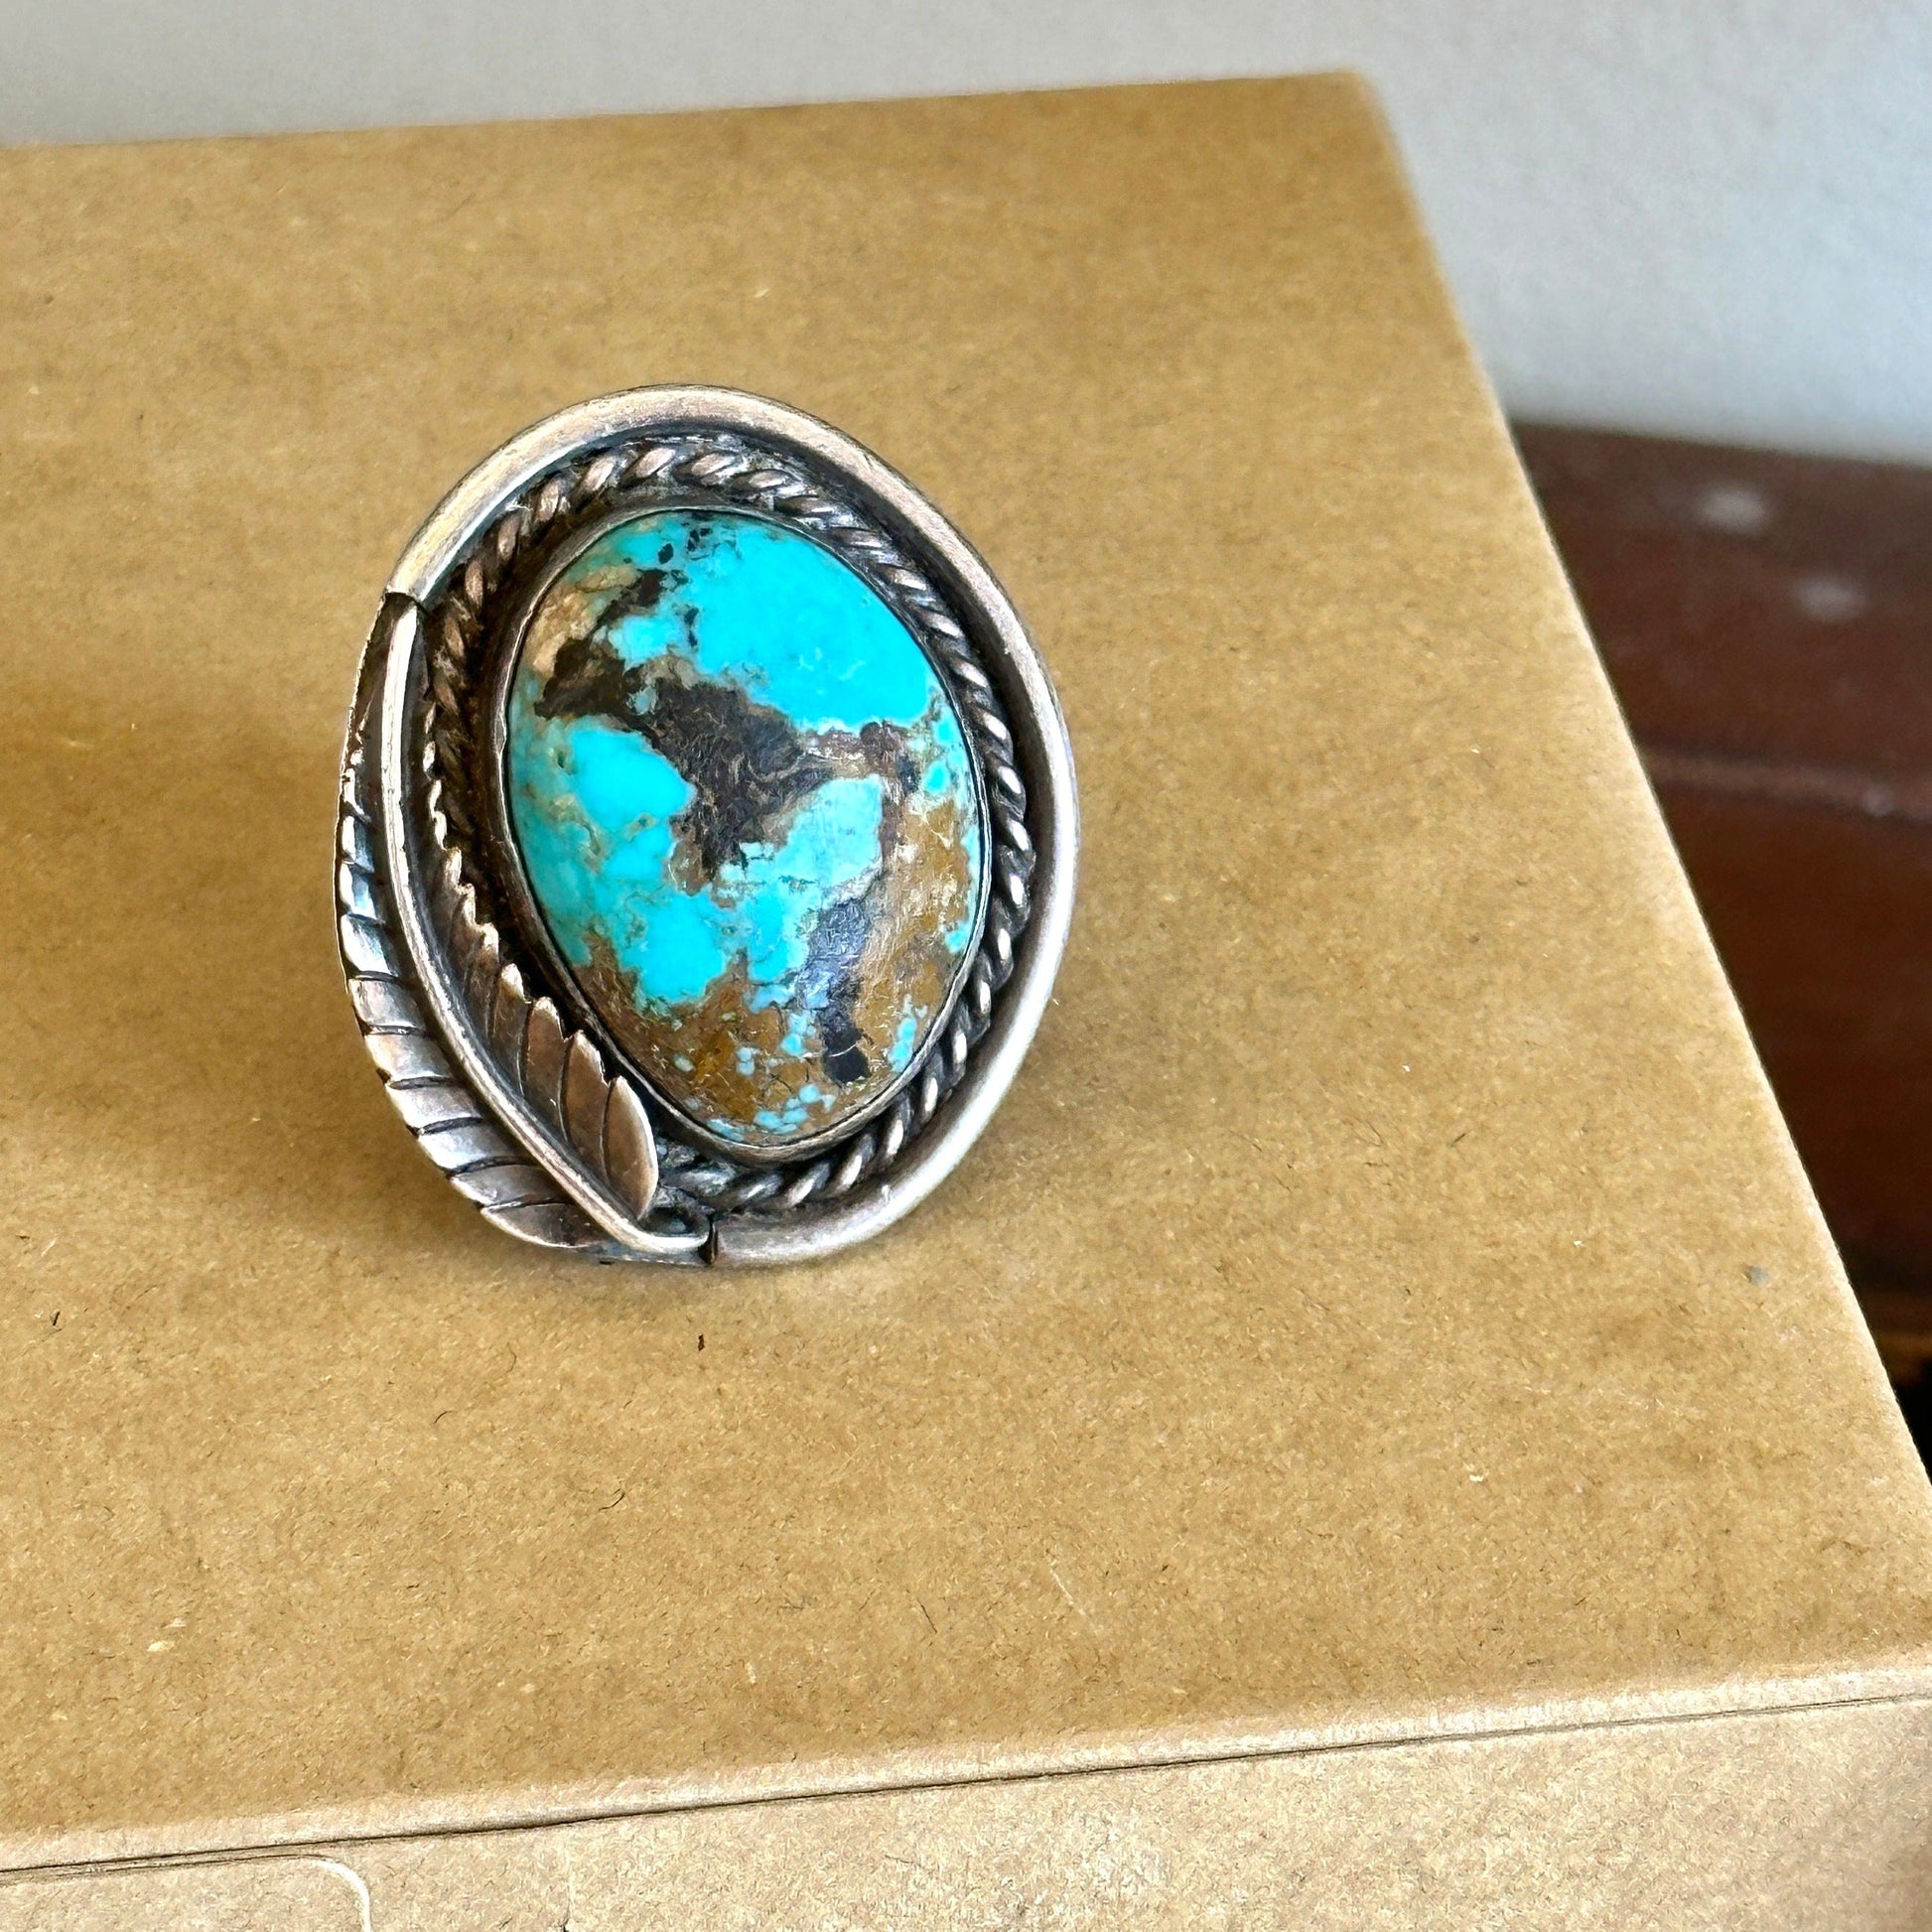 Large Vintage Navajo Turquoise Ring Likely Blue Diamond Stone - Turquoise & Tufa